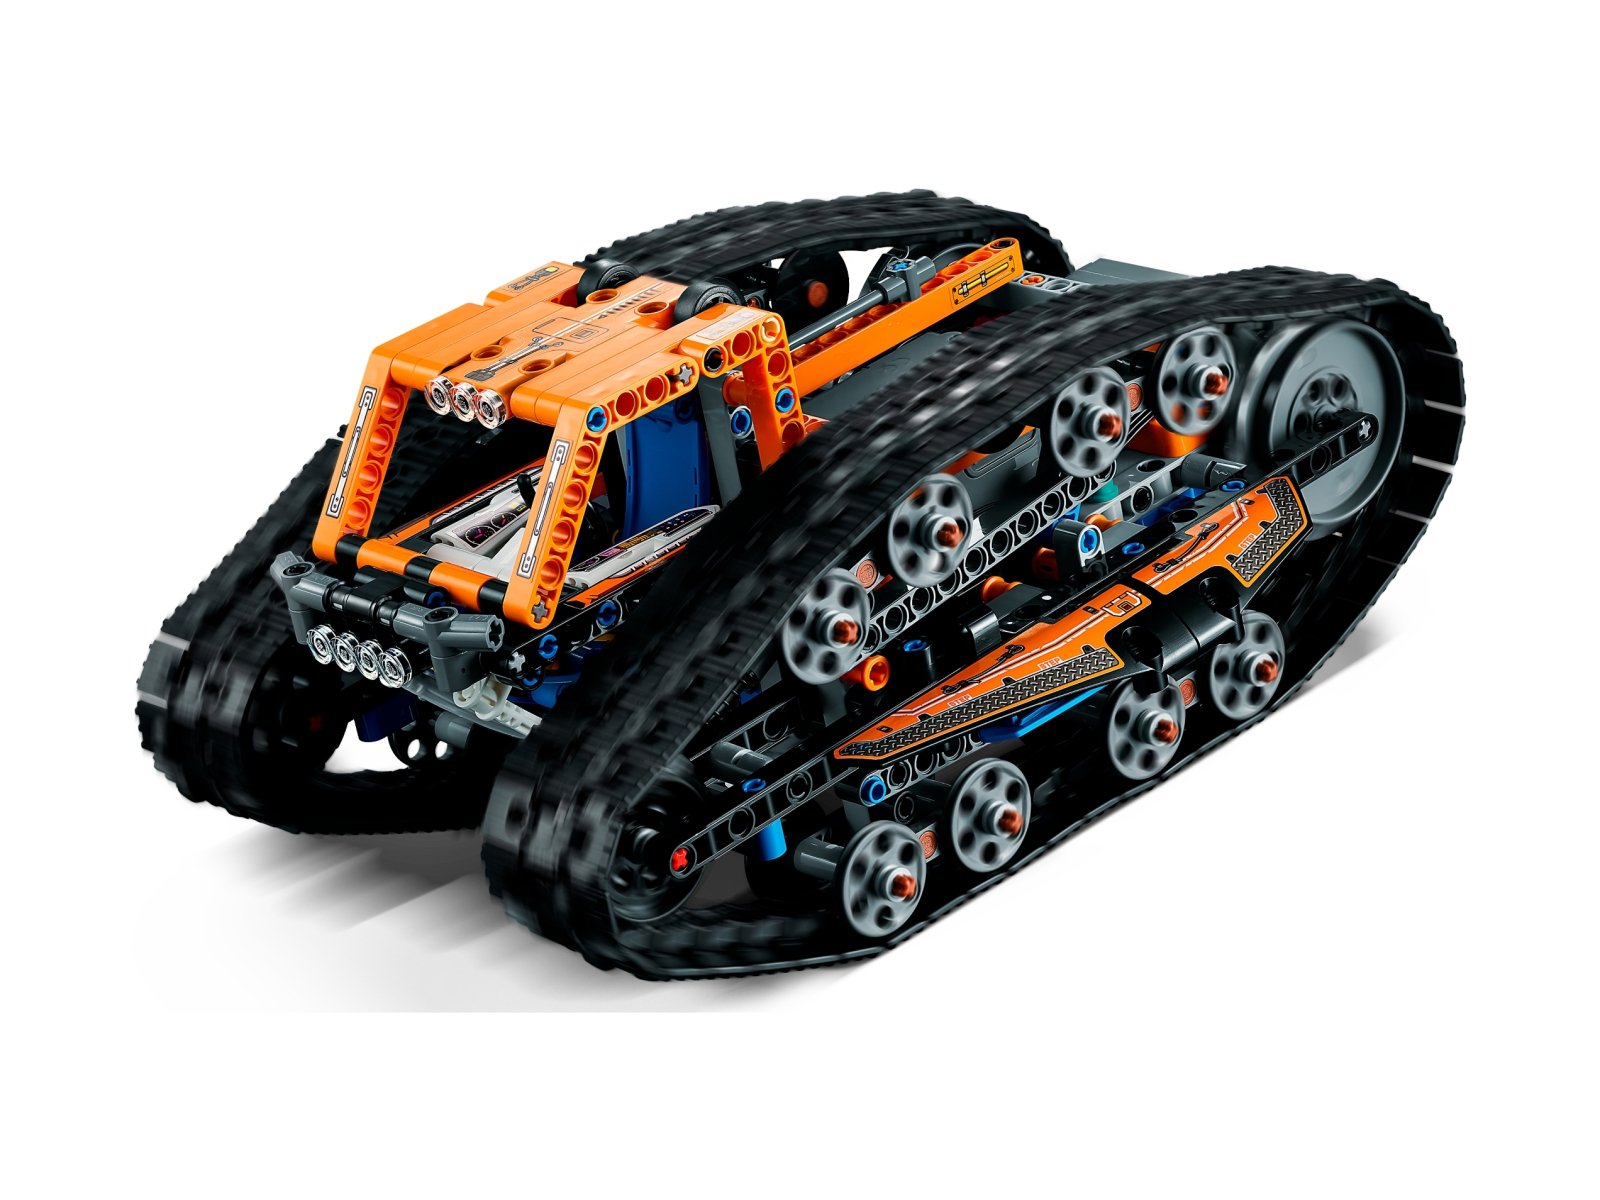 LEGO Technic 42140 Zmiennokształtny pojazd sterowany przez aplikację